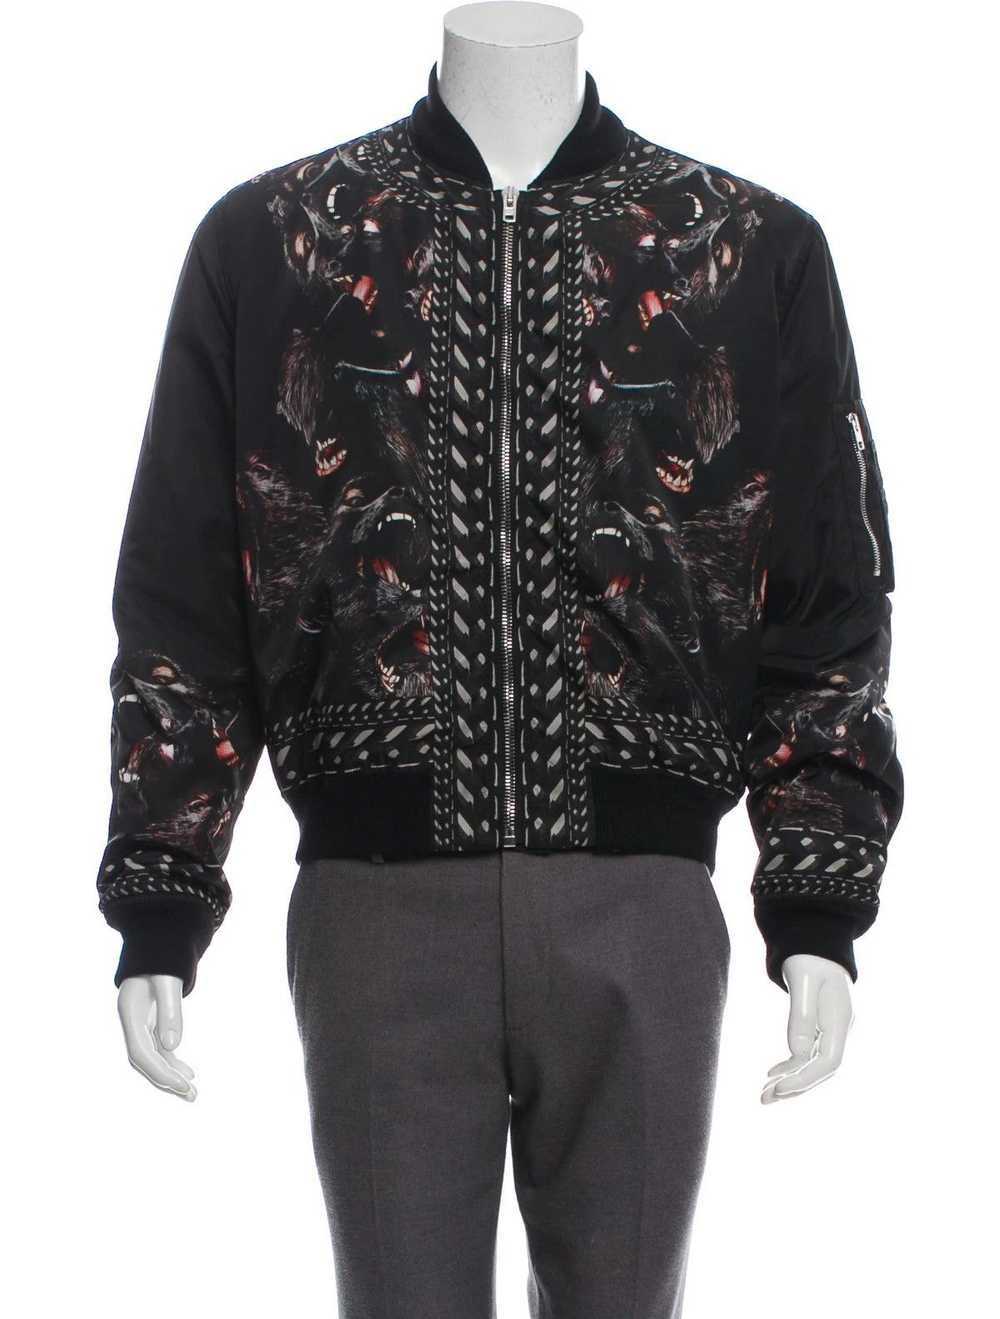 Givenchy Givenchy monkey bomber jacket - image 7